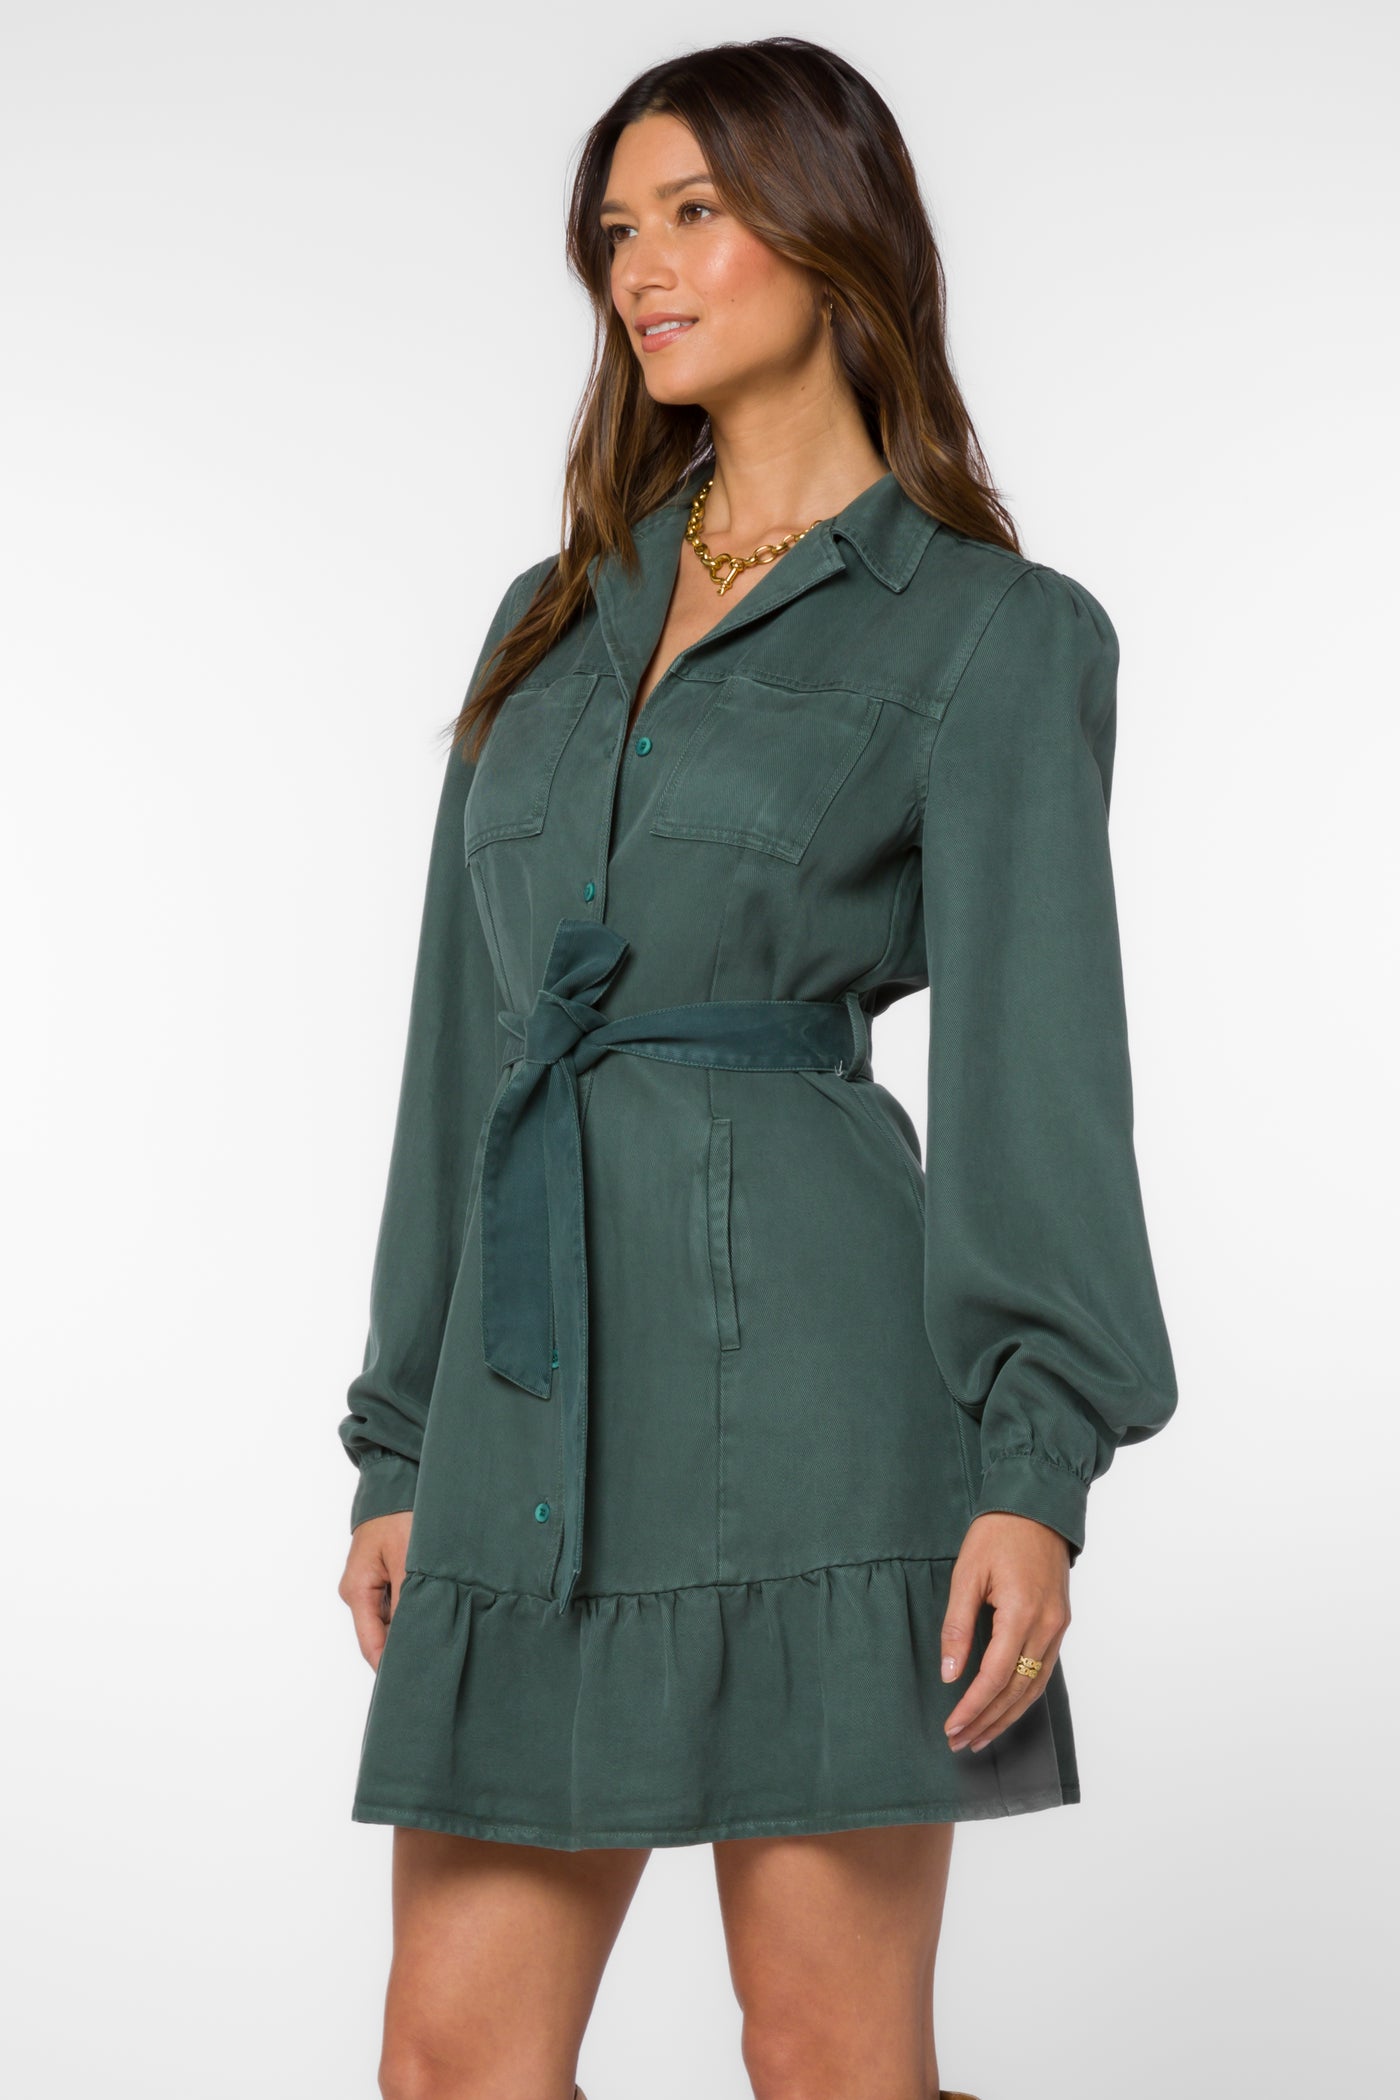 Bethenny Dark Green Dress - Dresses - Velvet Heart Clothing